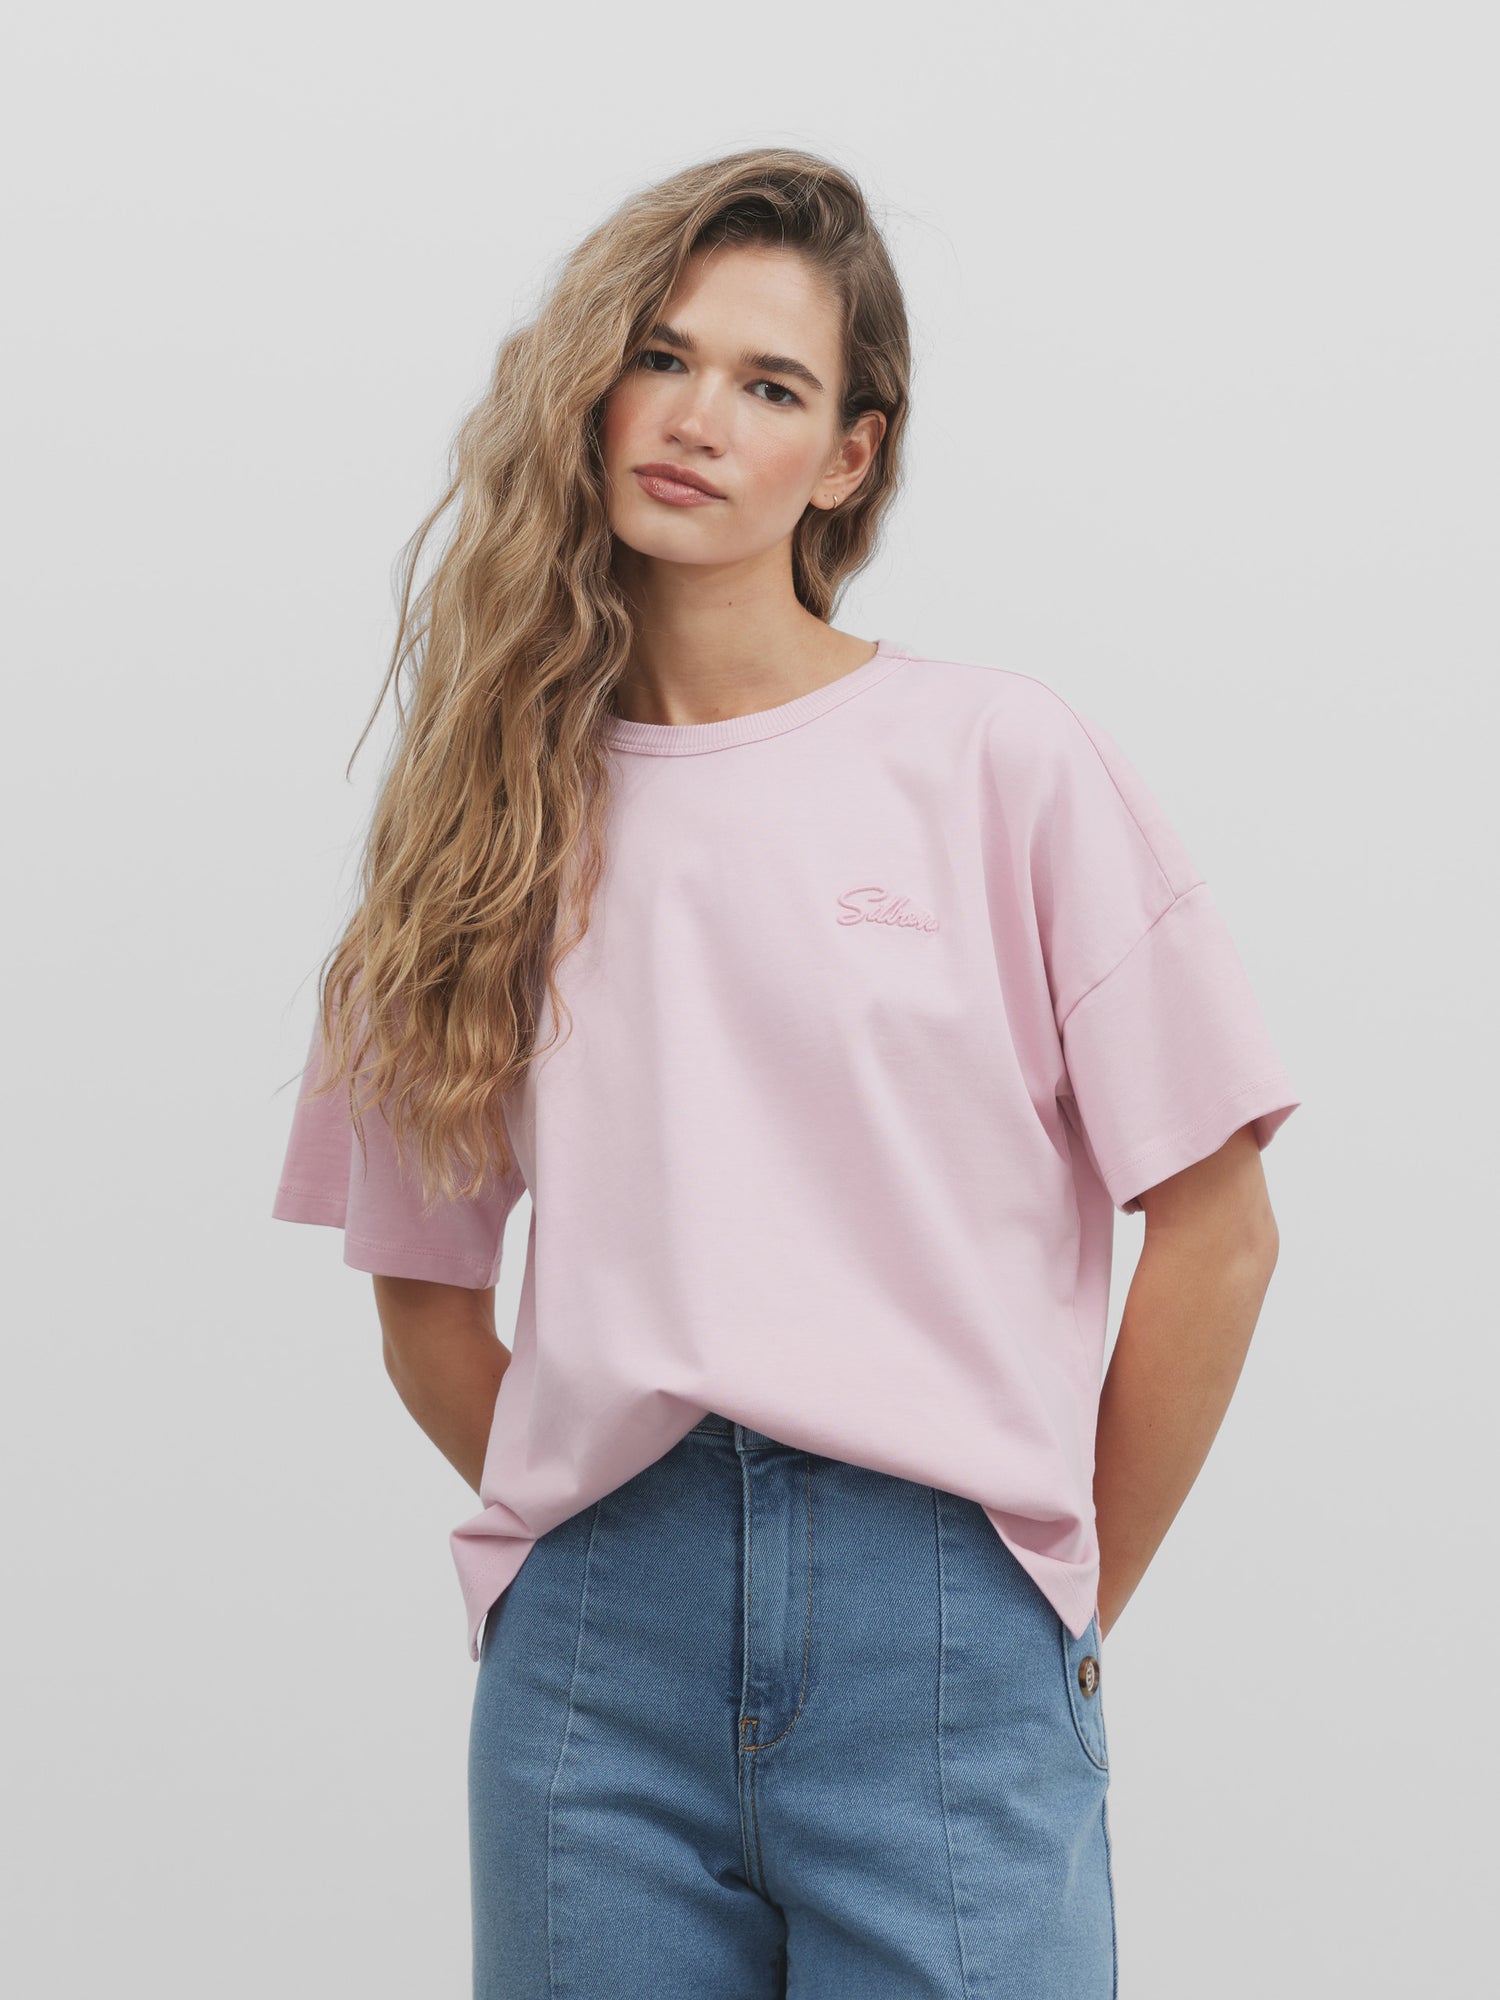 Camiseta woman silbon mini rosa